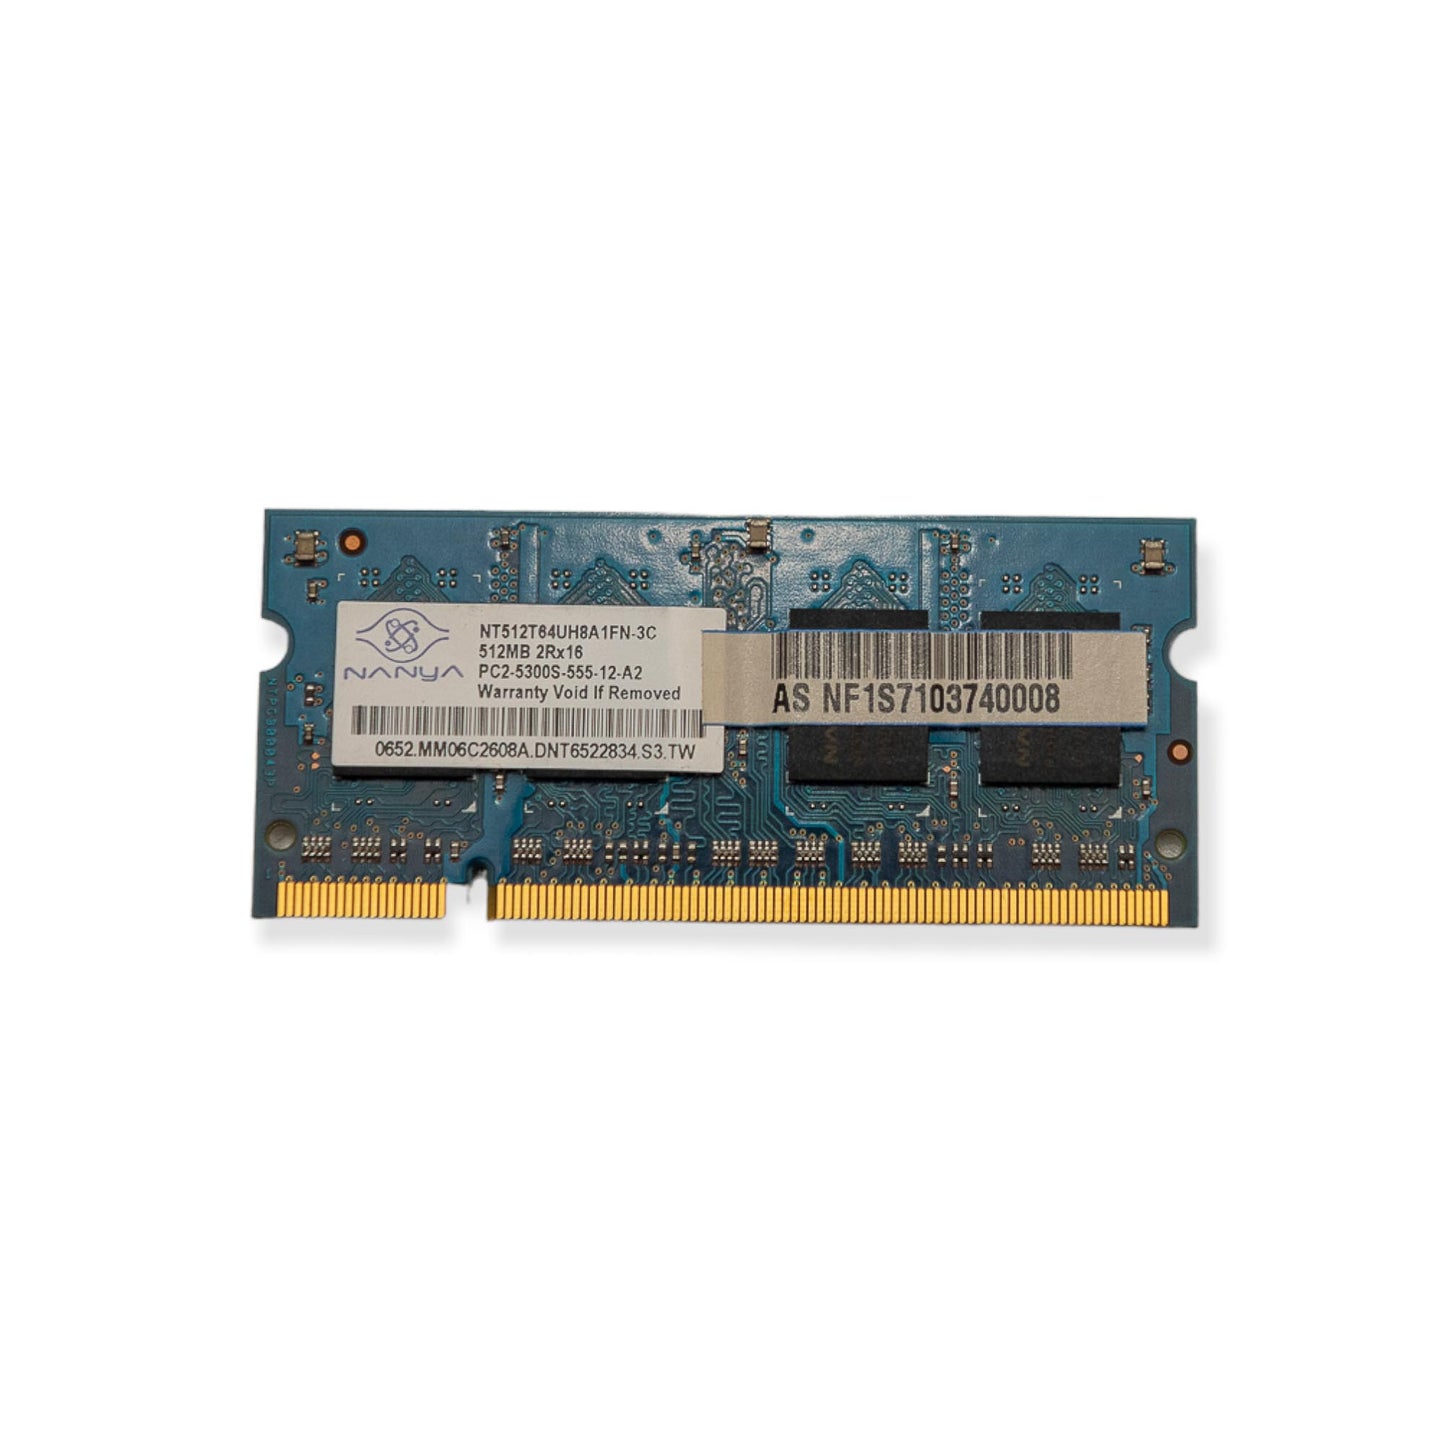 Memória Ram Nanya DDR2 512MB 5300S NT512T64UH8A1FN-3C